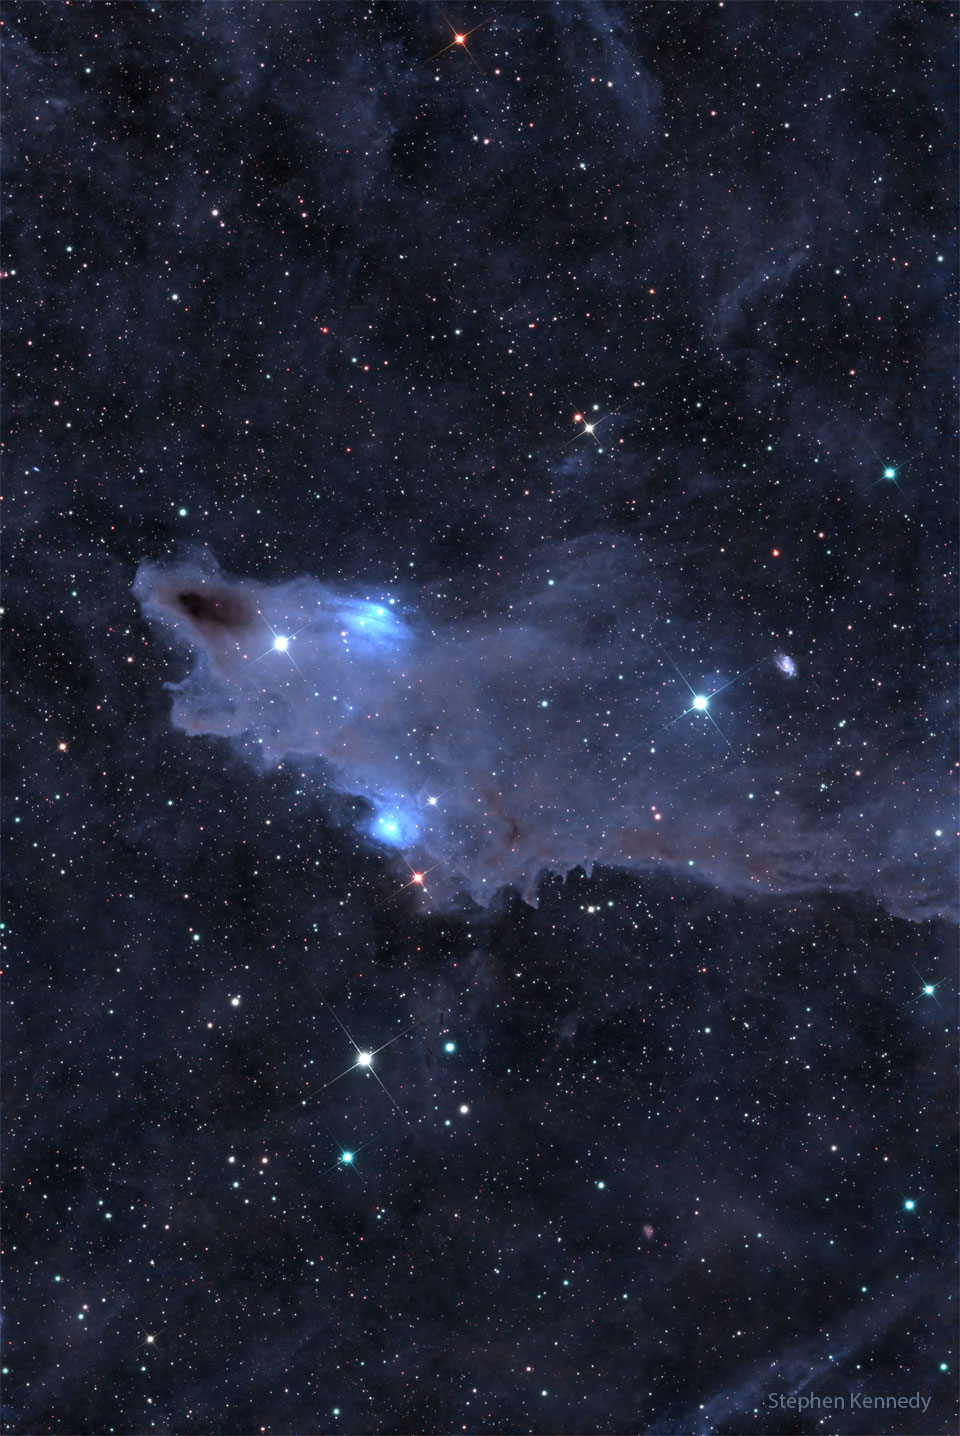 Na tle gwiazdowego pola widoczny jest ciemnobrązowy obłok, który wygląda niczym rekin, otoczony mniej wydatnymi, niebieskawymi mgławicami.
Więcej szczegółowych informacji w opisie poniżej.